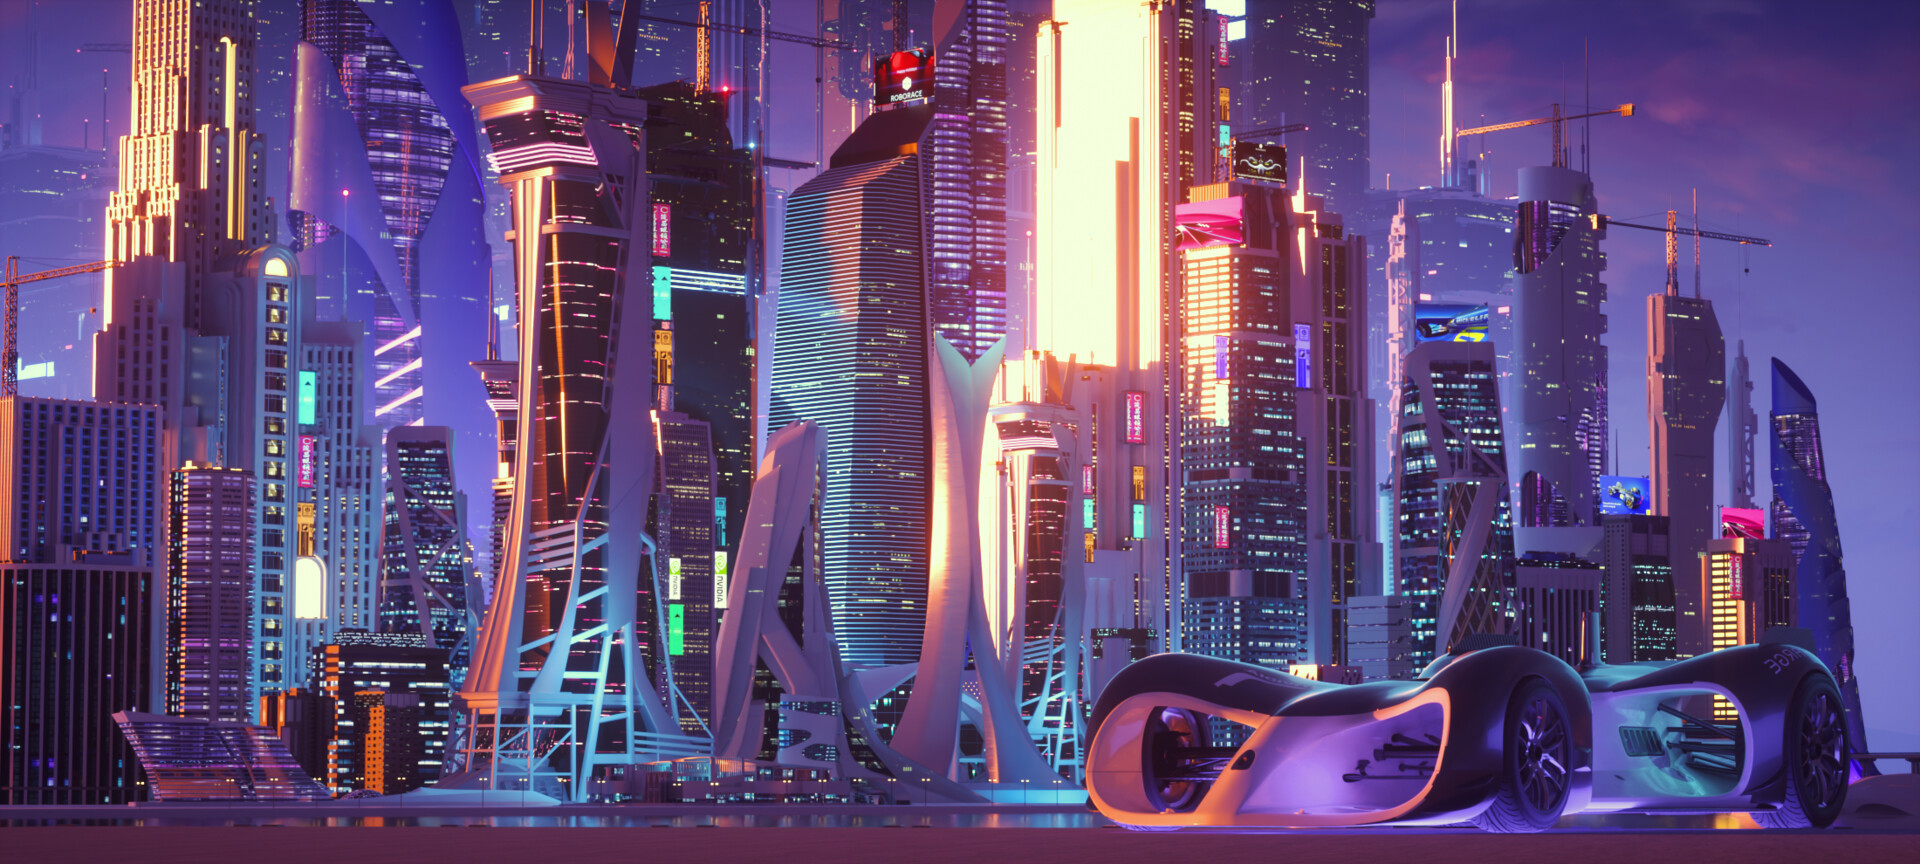 Sci Fi City Art by Zaki Aby